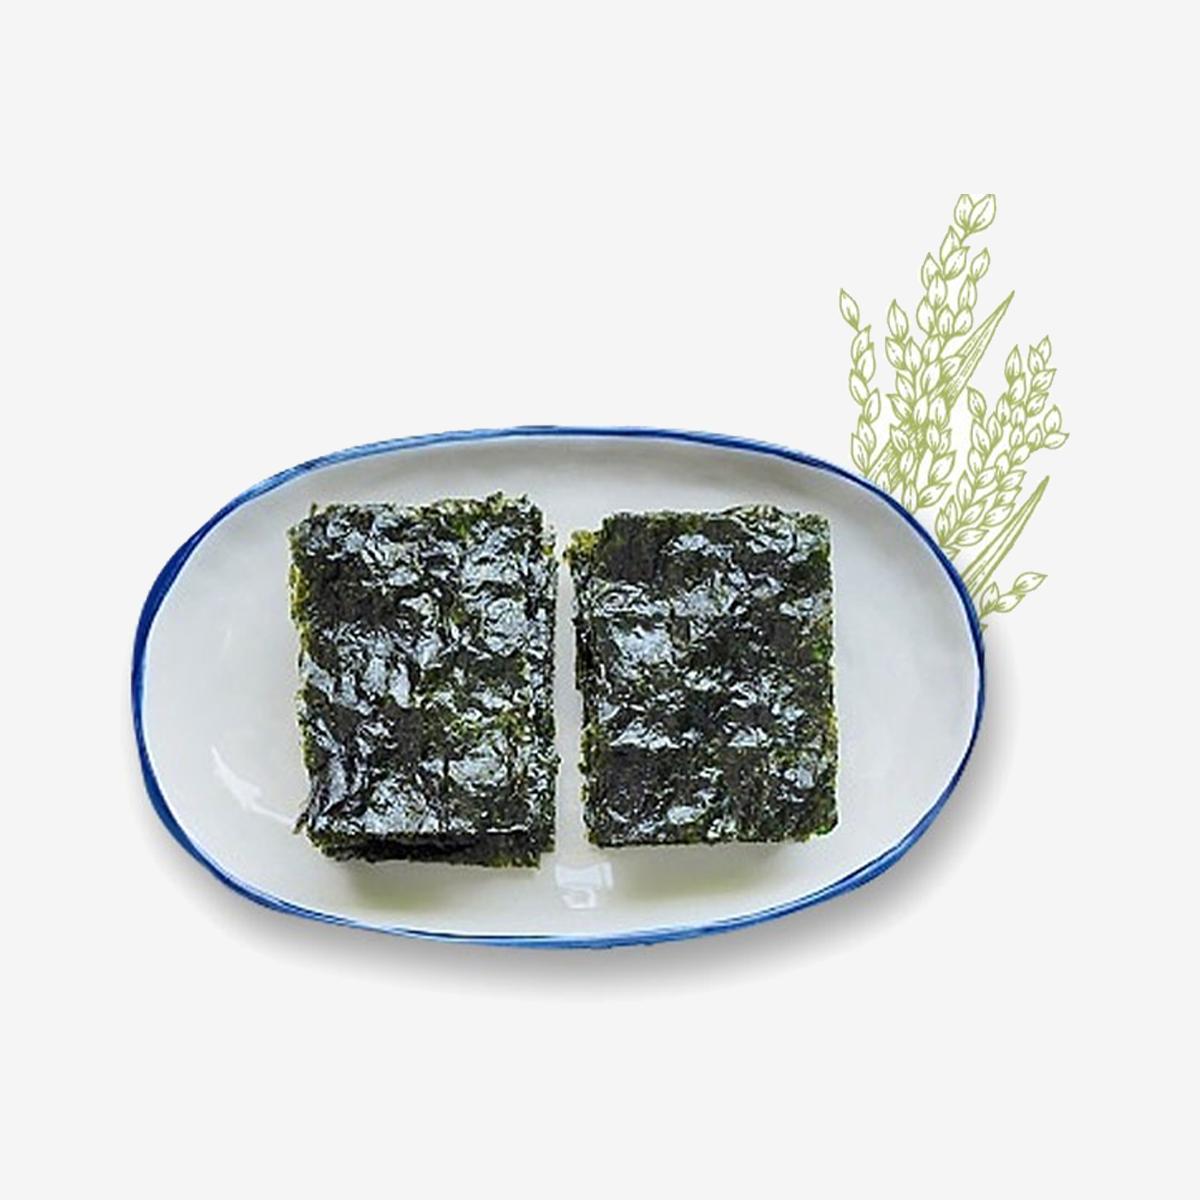 Original Seaweed Snack